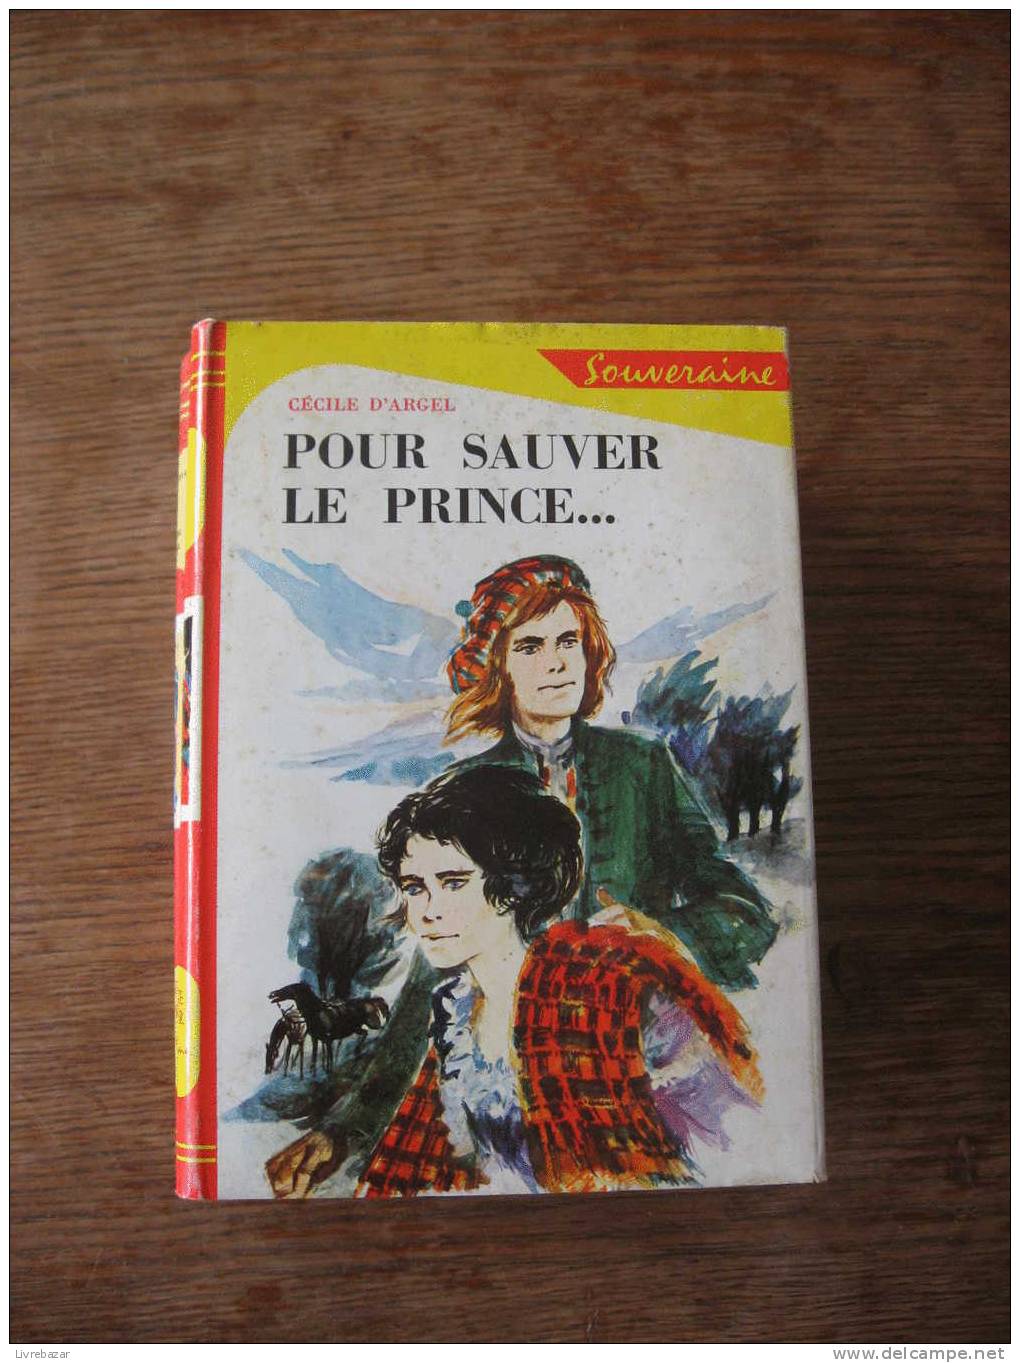 POUR SAUVER LE PRINCE... CECILE D'ARGEL SOUVERAINE ILLUSTRATIONS GILLES VALDES JACQUETTE PAPIER - Bibliotheque Rouge Et Or